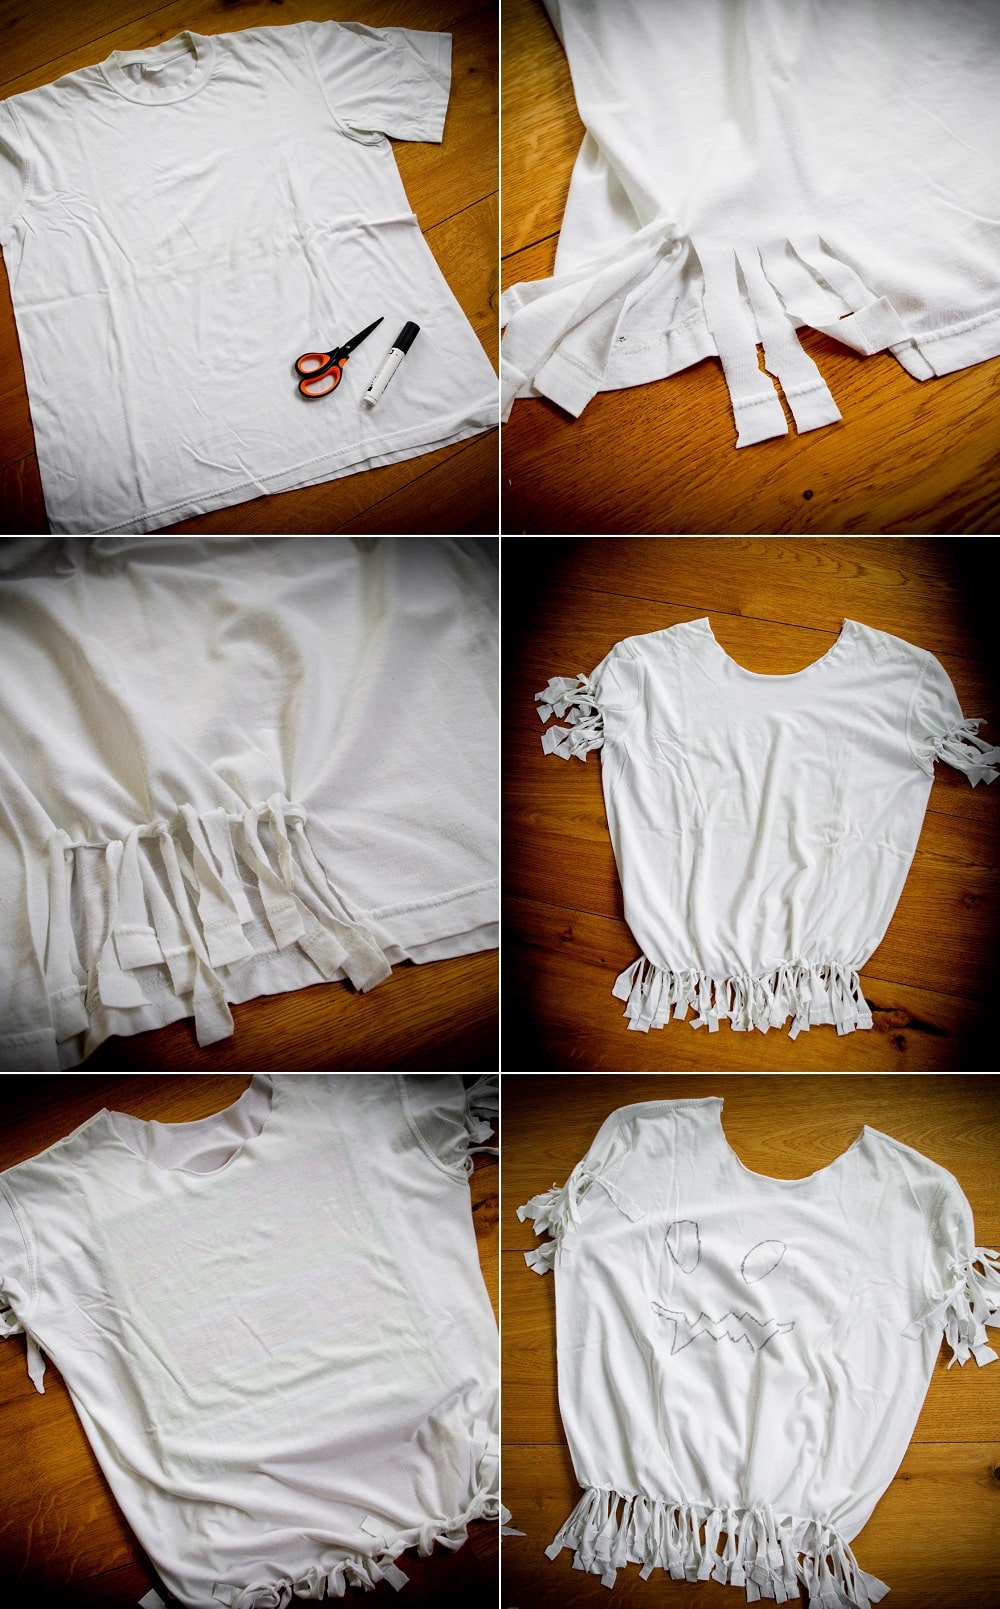 Geisterkostüm aus weißem Shirt